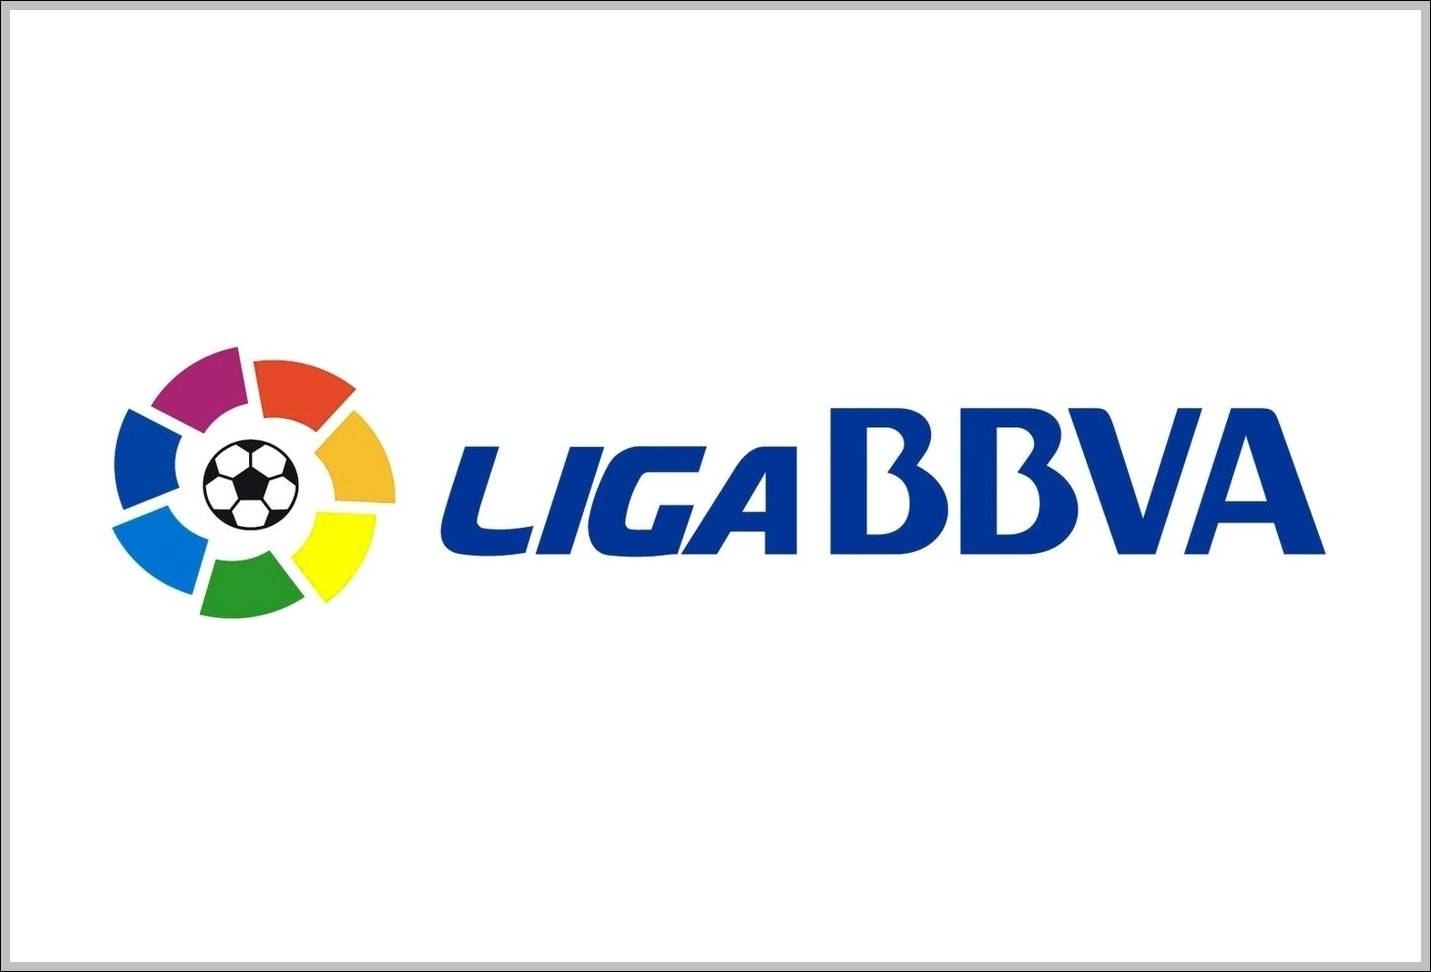 Liga BBVA sign